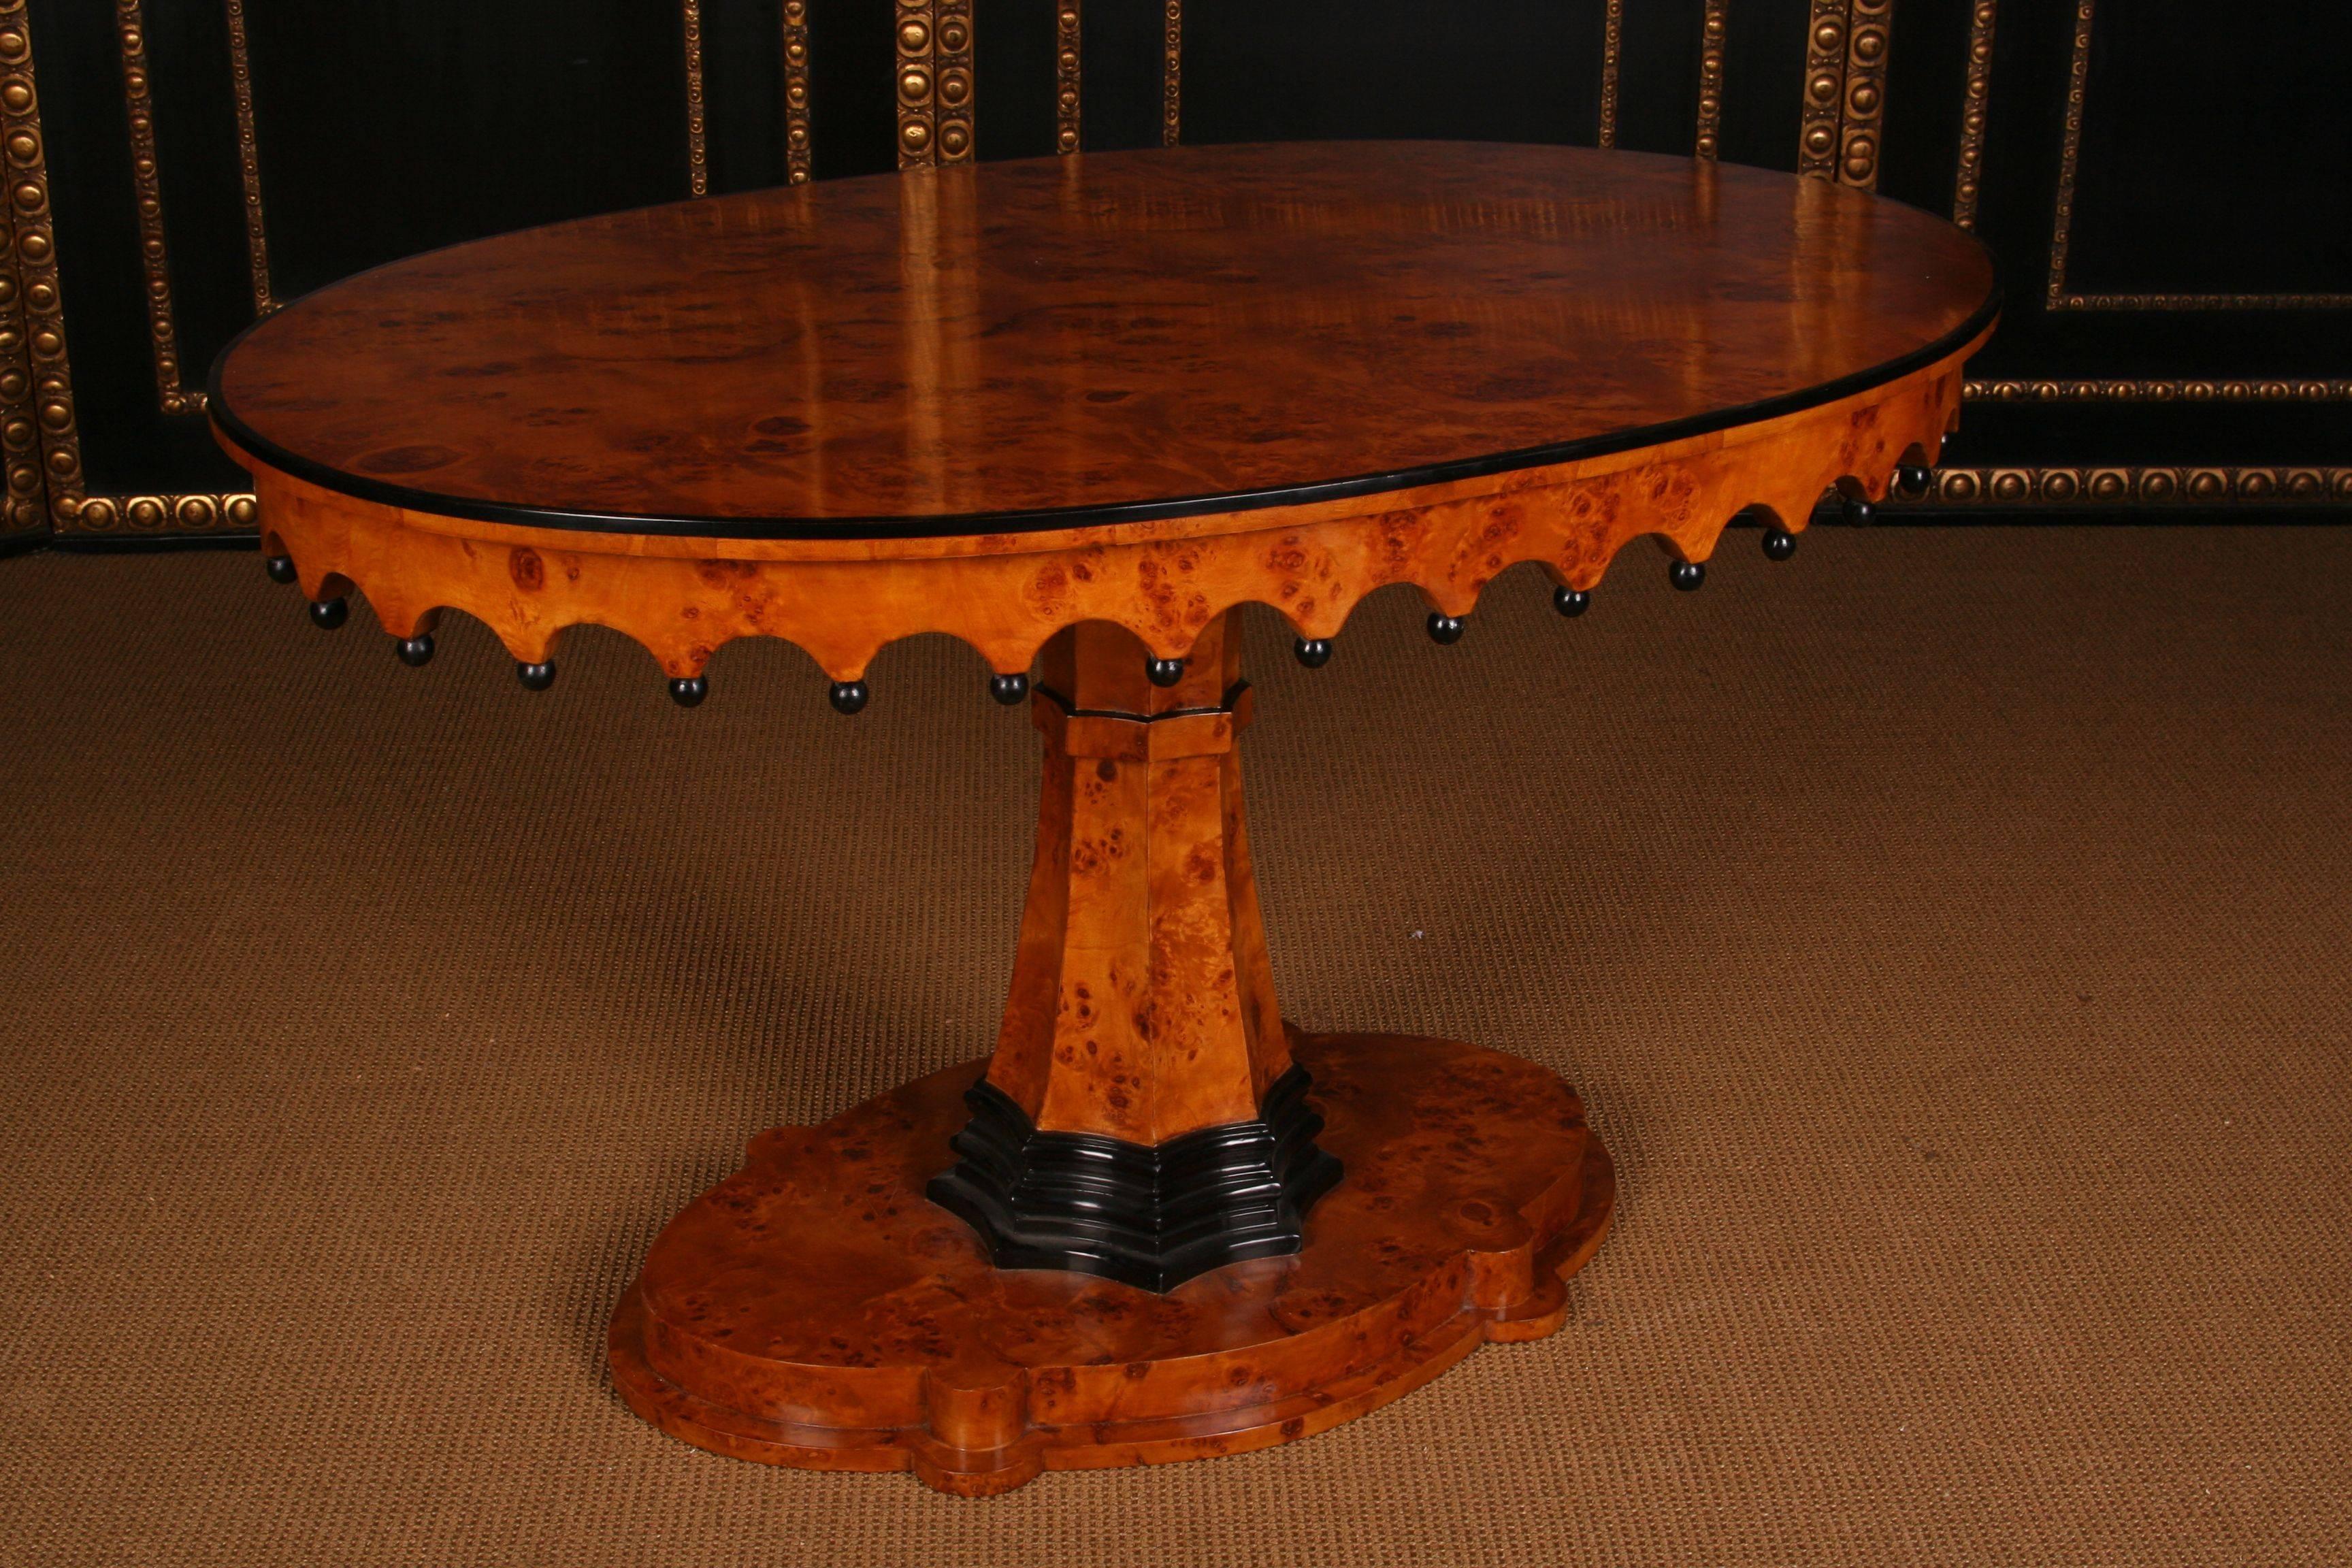 Ovaler Holztisch im Biedermeier-Stil des 20. Jahrhunderts
Außergewöhnlich schöner ovaler Tisch im Biedermeier-Stil.
Vogelaugenahorn auf Massivholz, teilweise geschwärzt. Oval gewölbter und profilierter Sockel. Mittlere aufsteigende, achteckige,